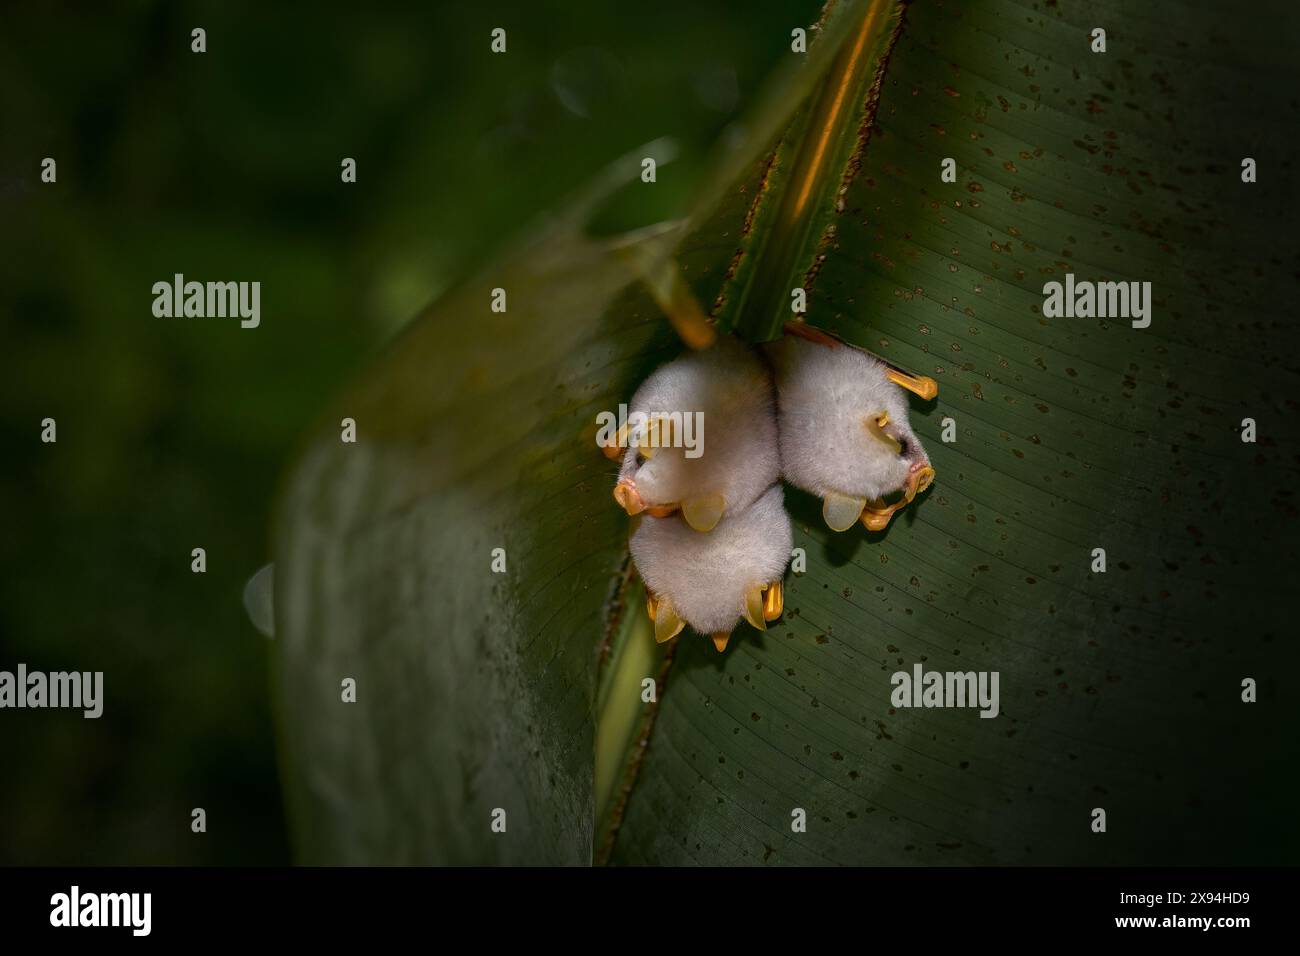 Honduranische weiße Fledermaus, Ectophylla alba, süße weiße Fellfledermäuse versteckt in den grünen Blättern, Braulio Carrillo NP in Costa Rica. Säugetiere im Wald, bis Stockfoto